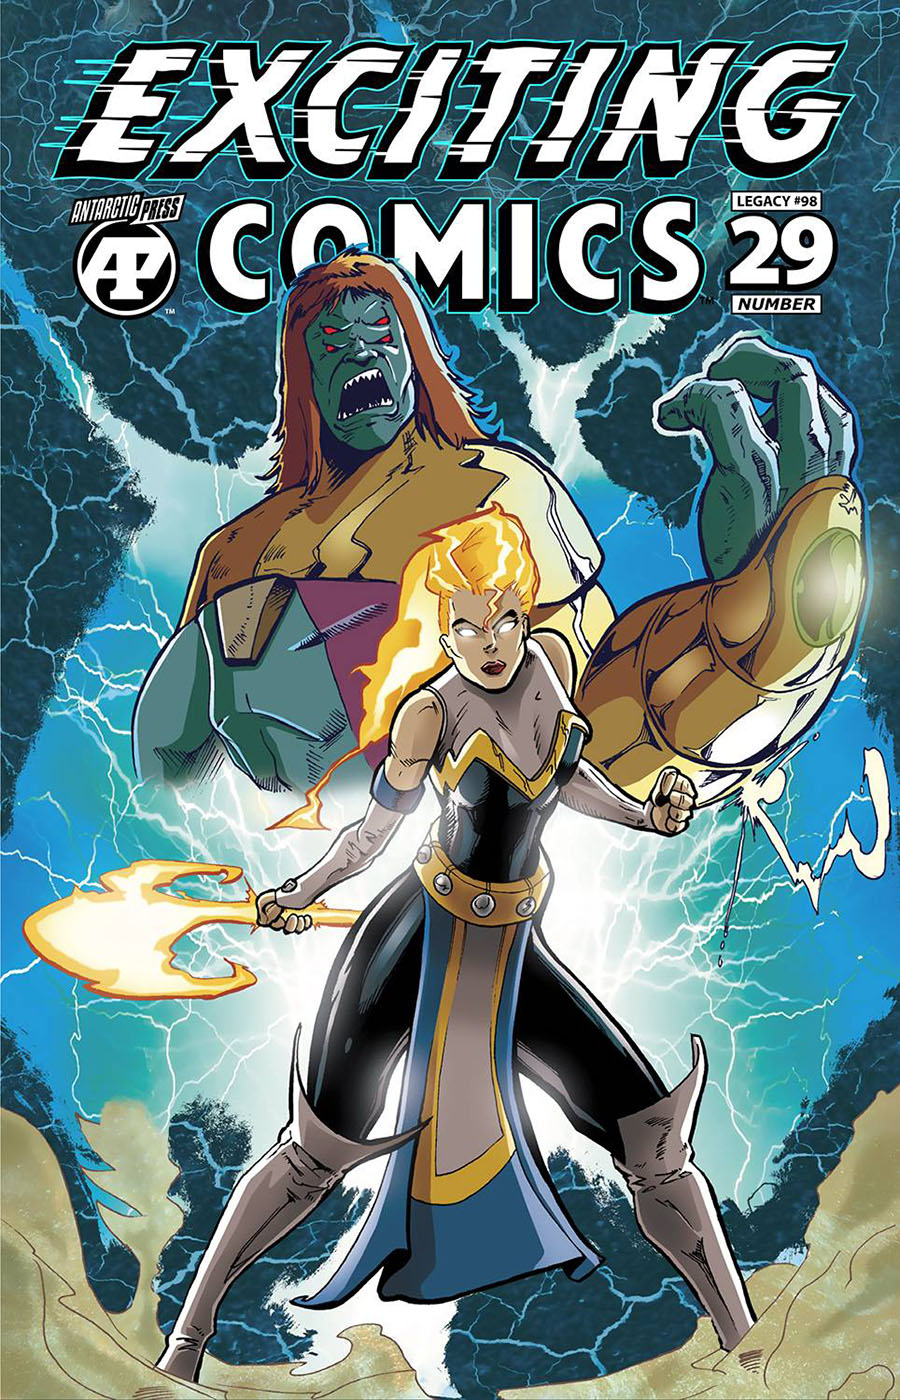 Exciting Comics Vol 2 #29